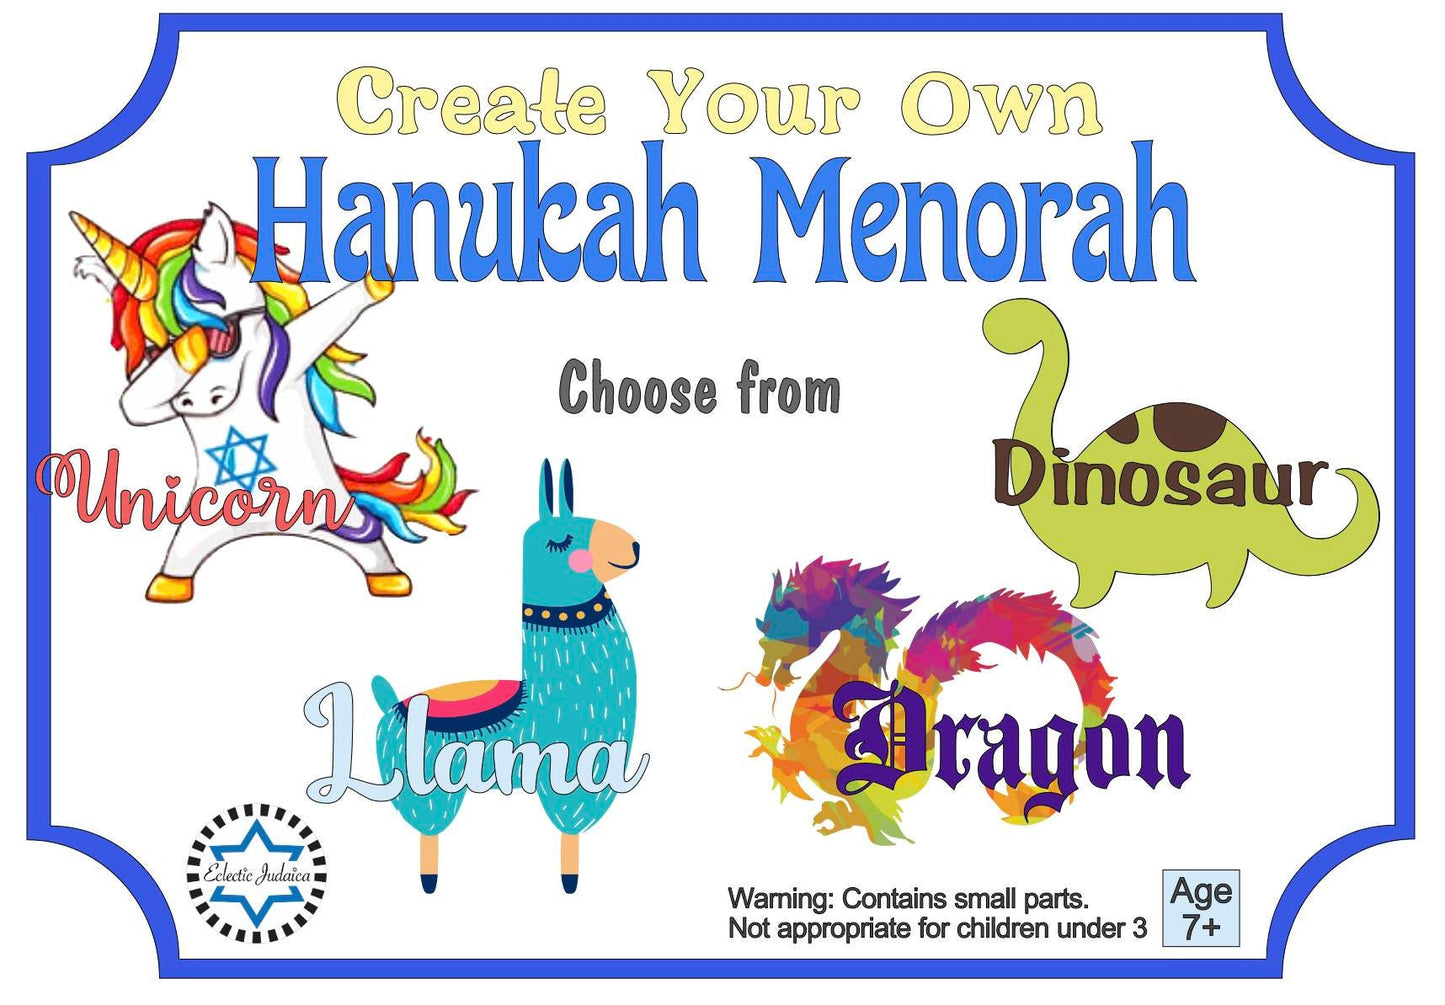 Make Your Own Creature Menorah Kit!